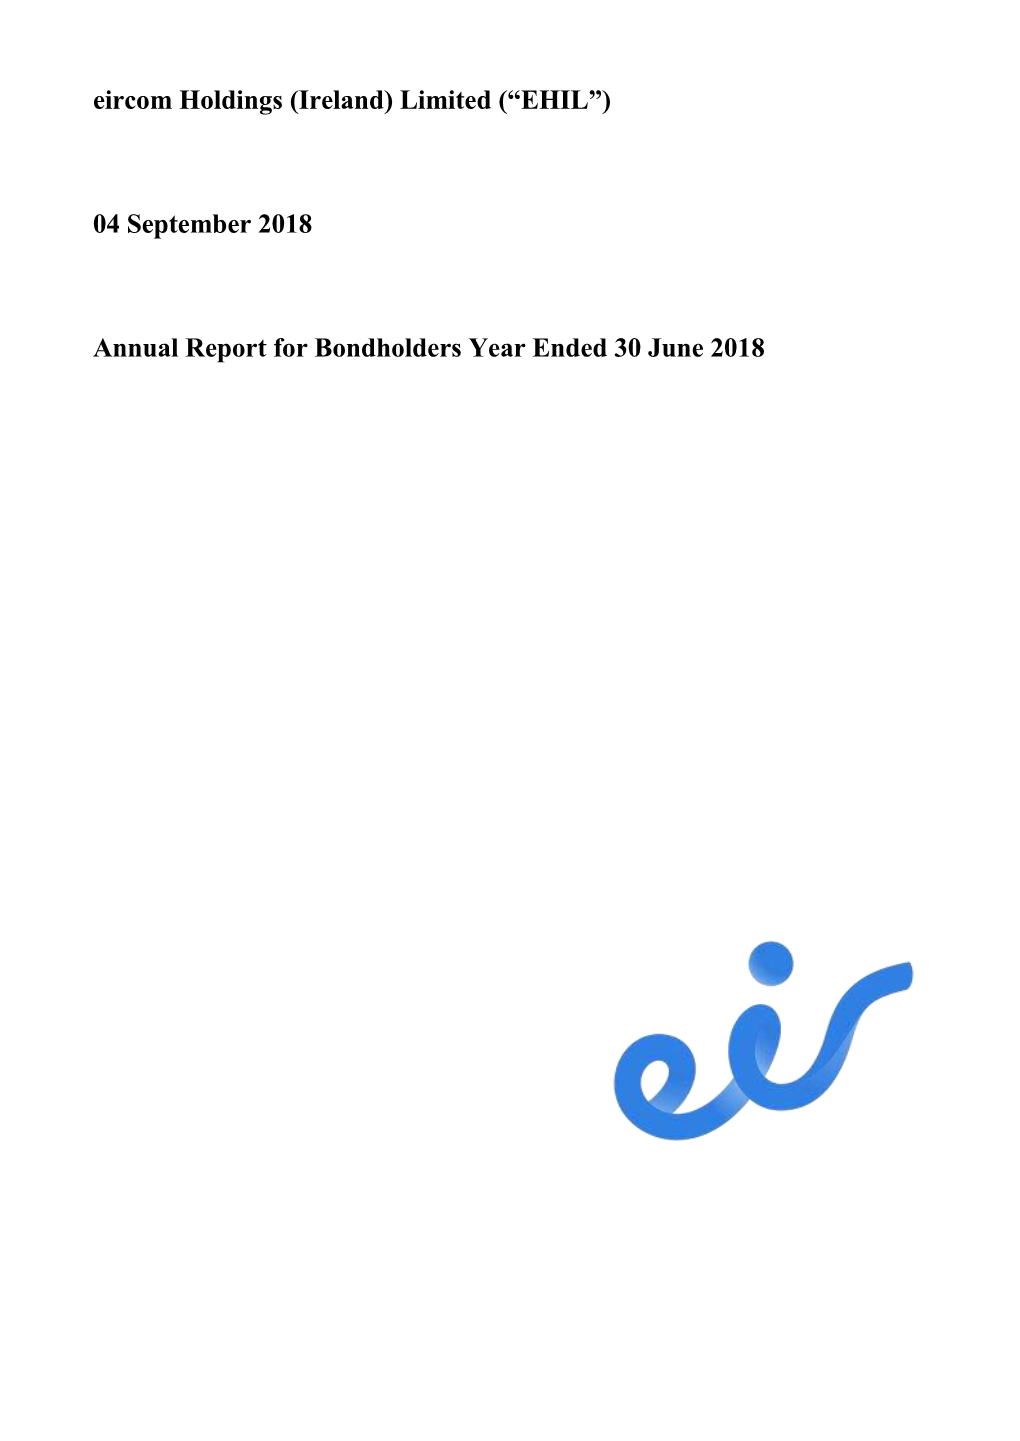 Eircom Holdings (Ireland) Limited (“EHIL”) 04 September 2018 Annual Report for Bondholders Year Ended 30 June 2018